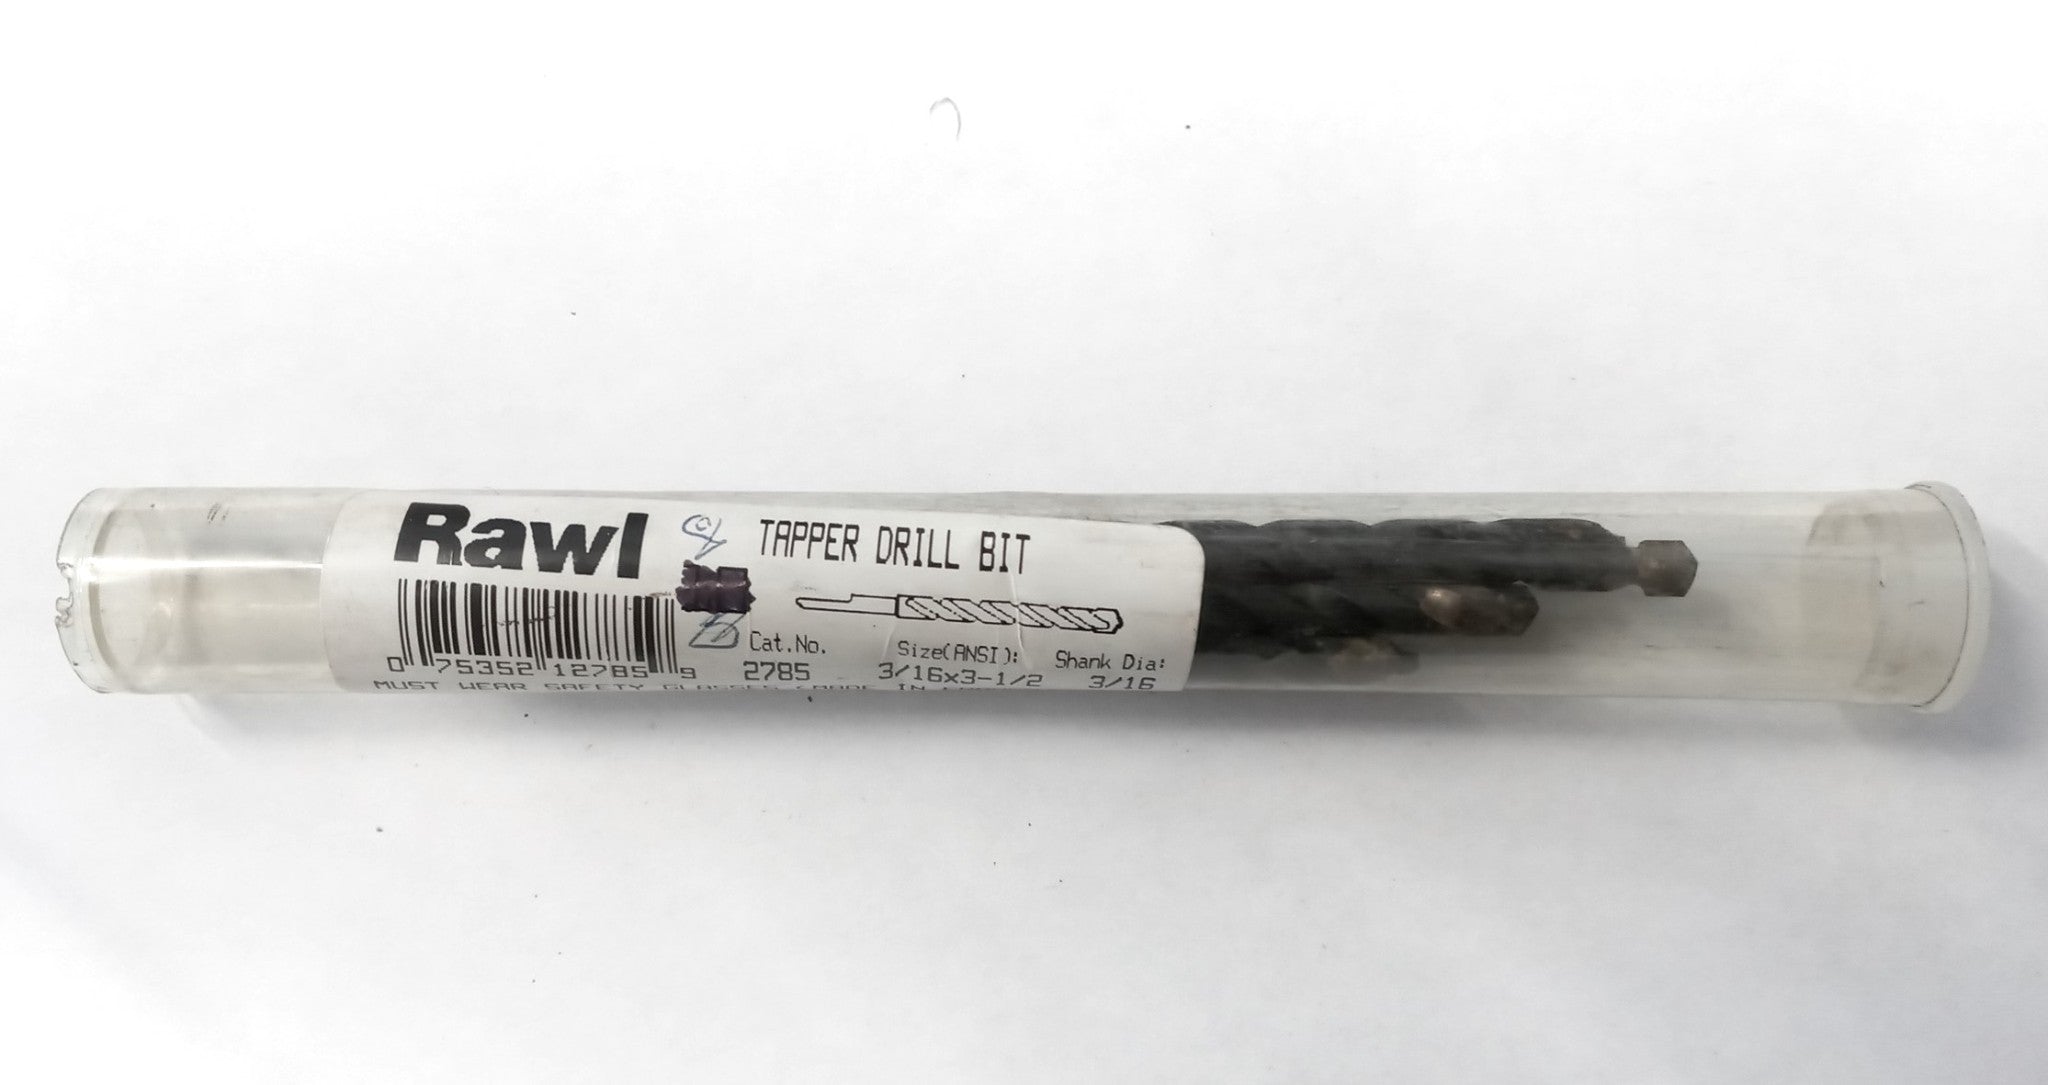 Rawl 2785 Tapper Drill Bits 3/16" x 3-1/2" with 3/16" Shank 8pcs (France)